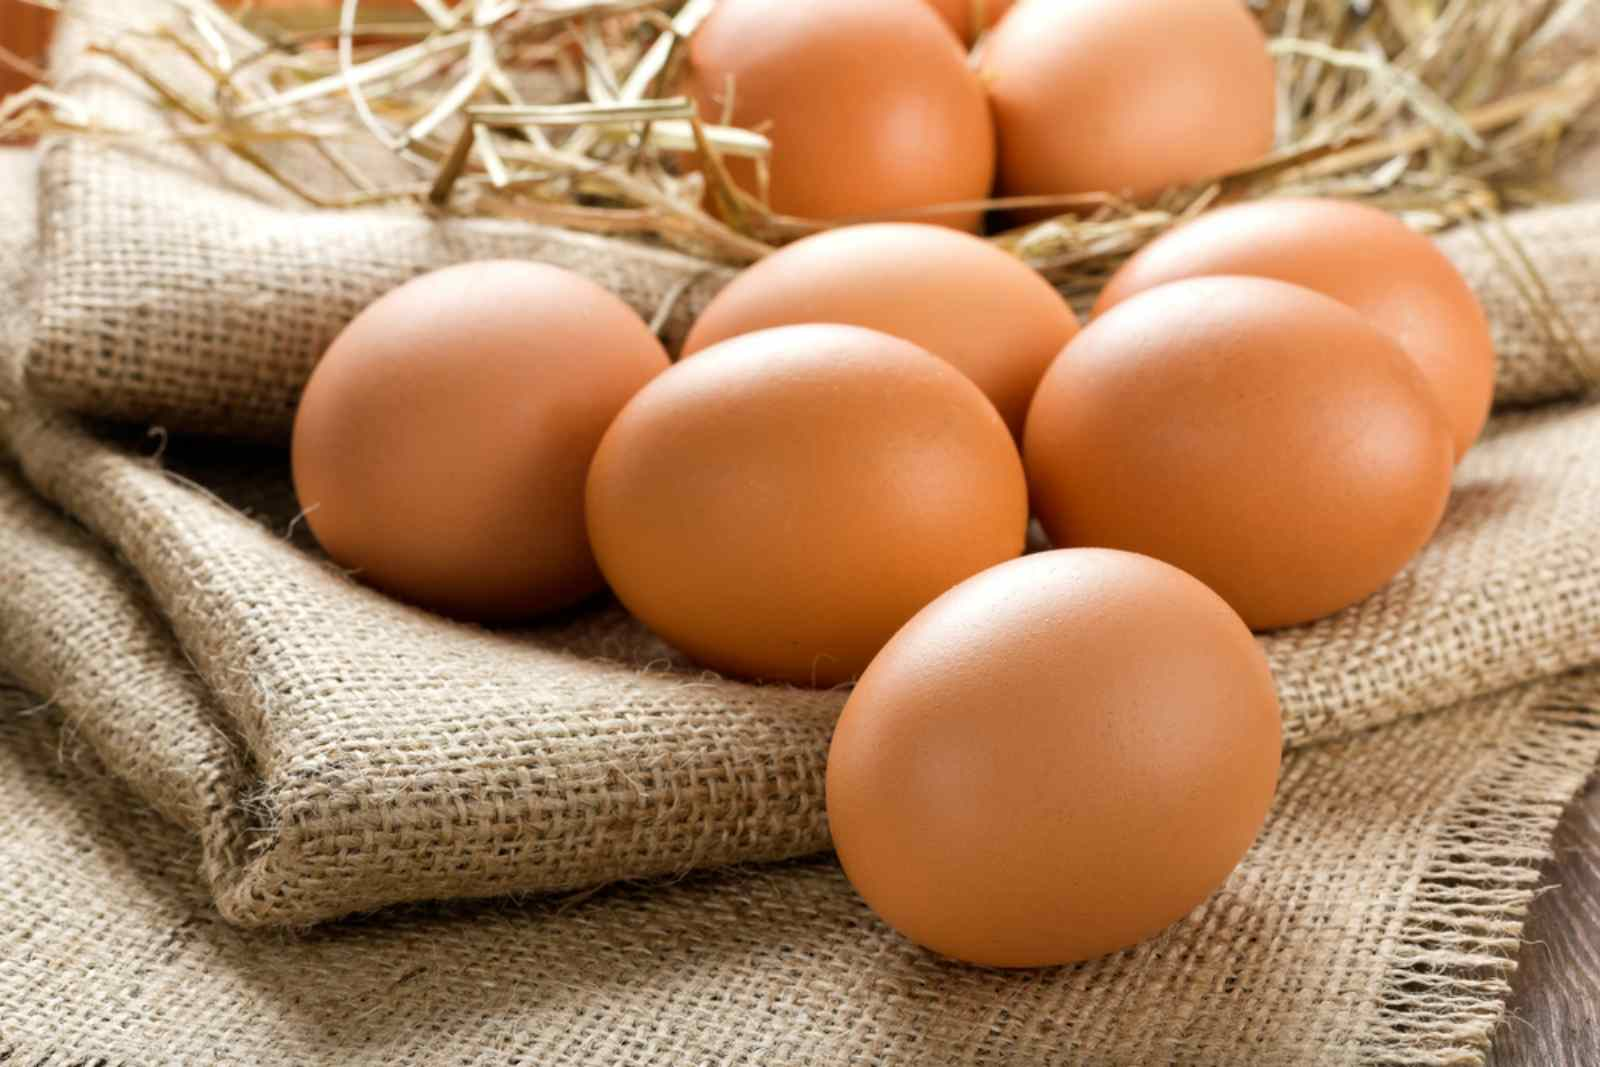 Trứng gà, trứng vịt, trứng ngỗng, trứng cút, loại nào bổ dưỡng hơn? Chuyên gia: Riêng loại trứng này ăn càng ít càng tốt - ảnh 1